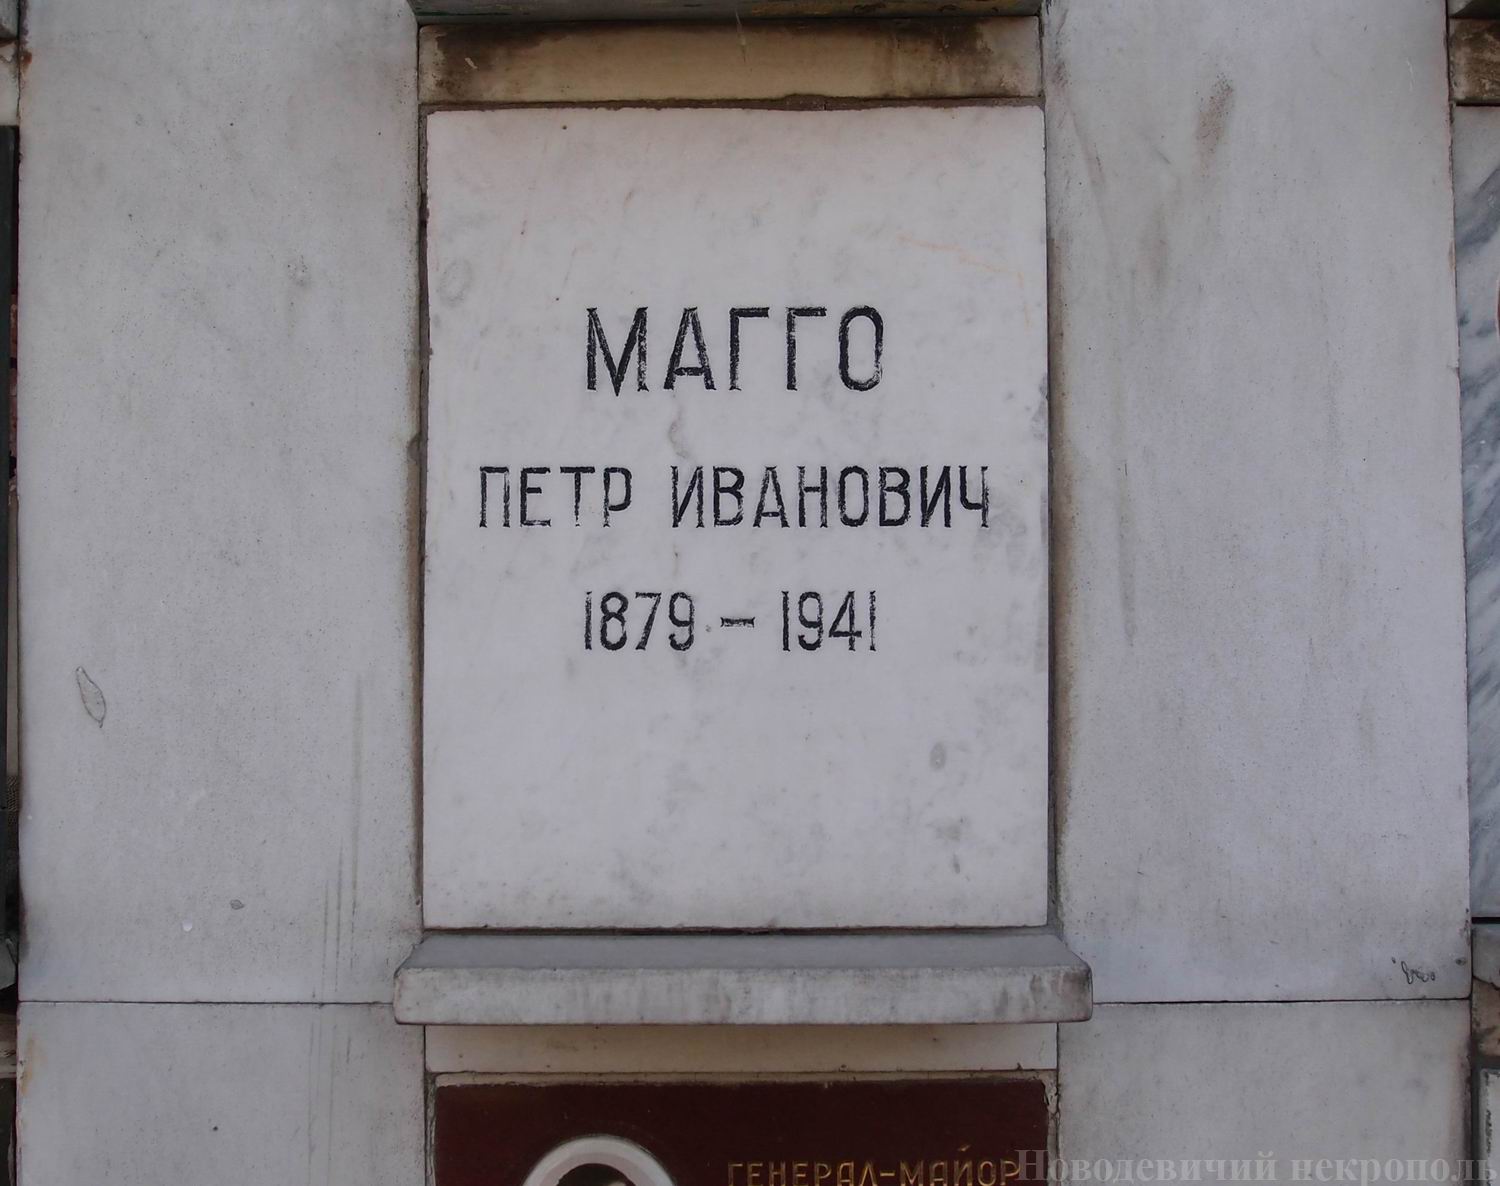 Плита на нише Магго П.И. (1879-1941), на Новодевичьем кладбище (колумбарий [62]-2-3).